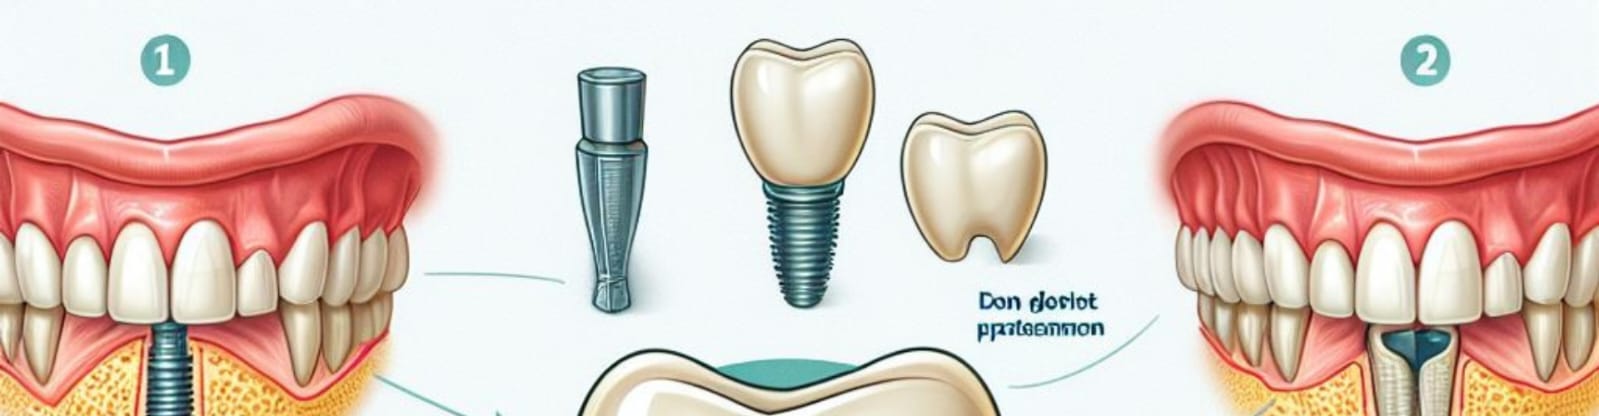 Dental Implants in Vizag